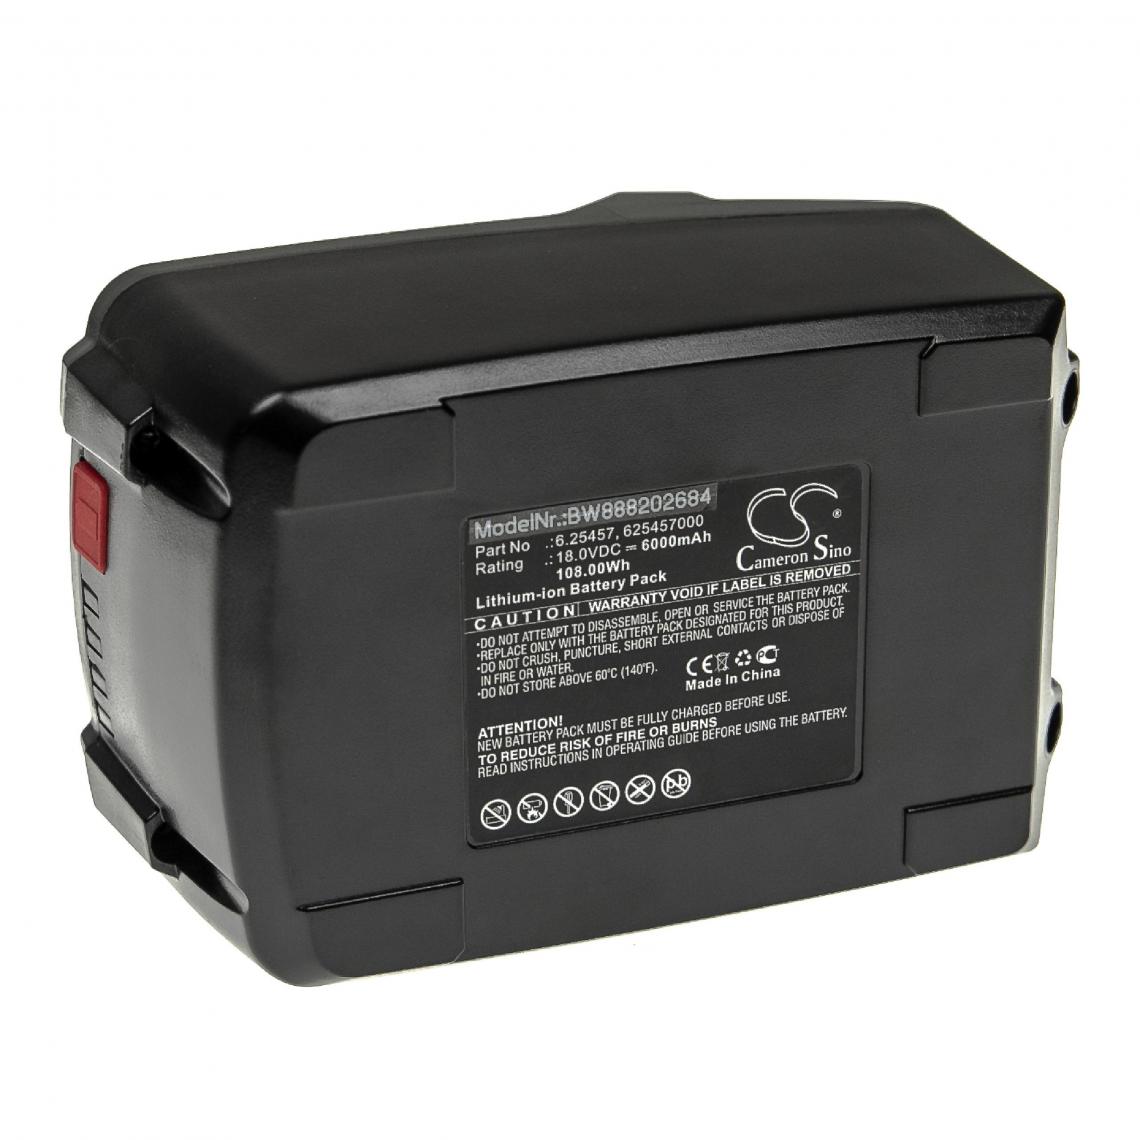 Vhbw - vhbw Batterie compatible avec Metabo SB 18 LT BL 602316840, SB 18 LT BL 602316890 outil électrique (6000mAh Li-ion 18 V) - Autre appareil de mesure